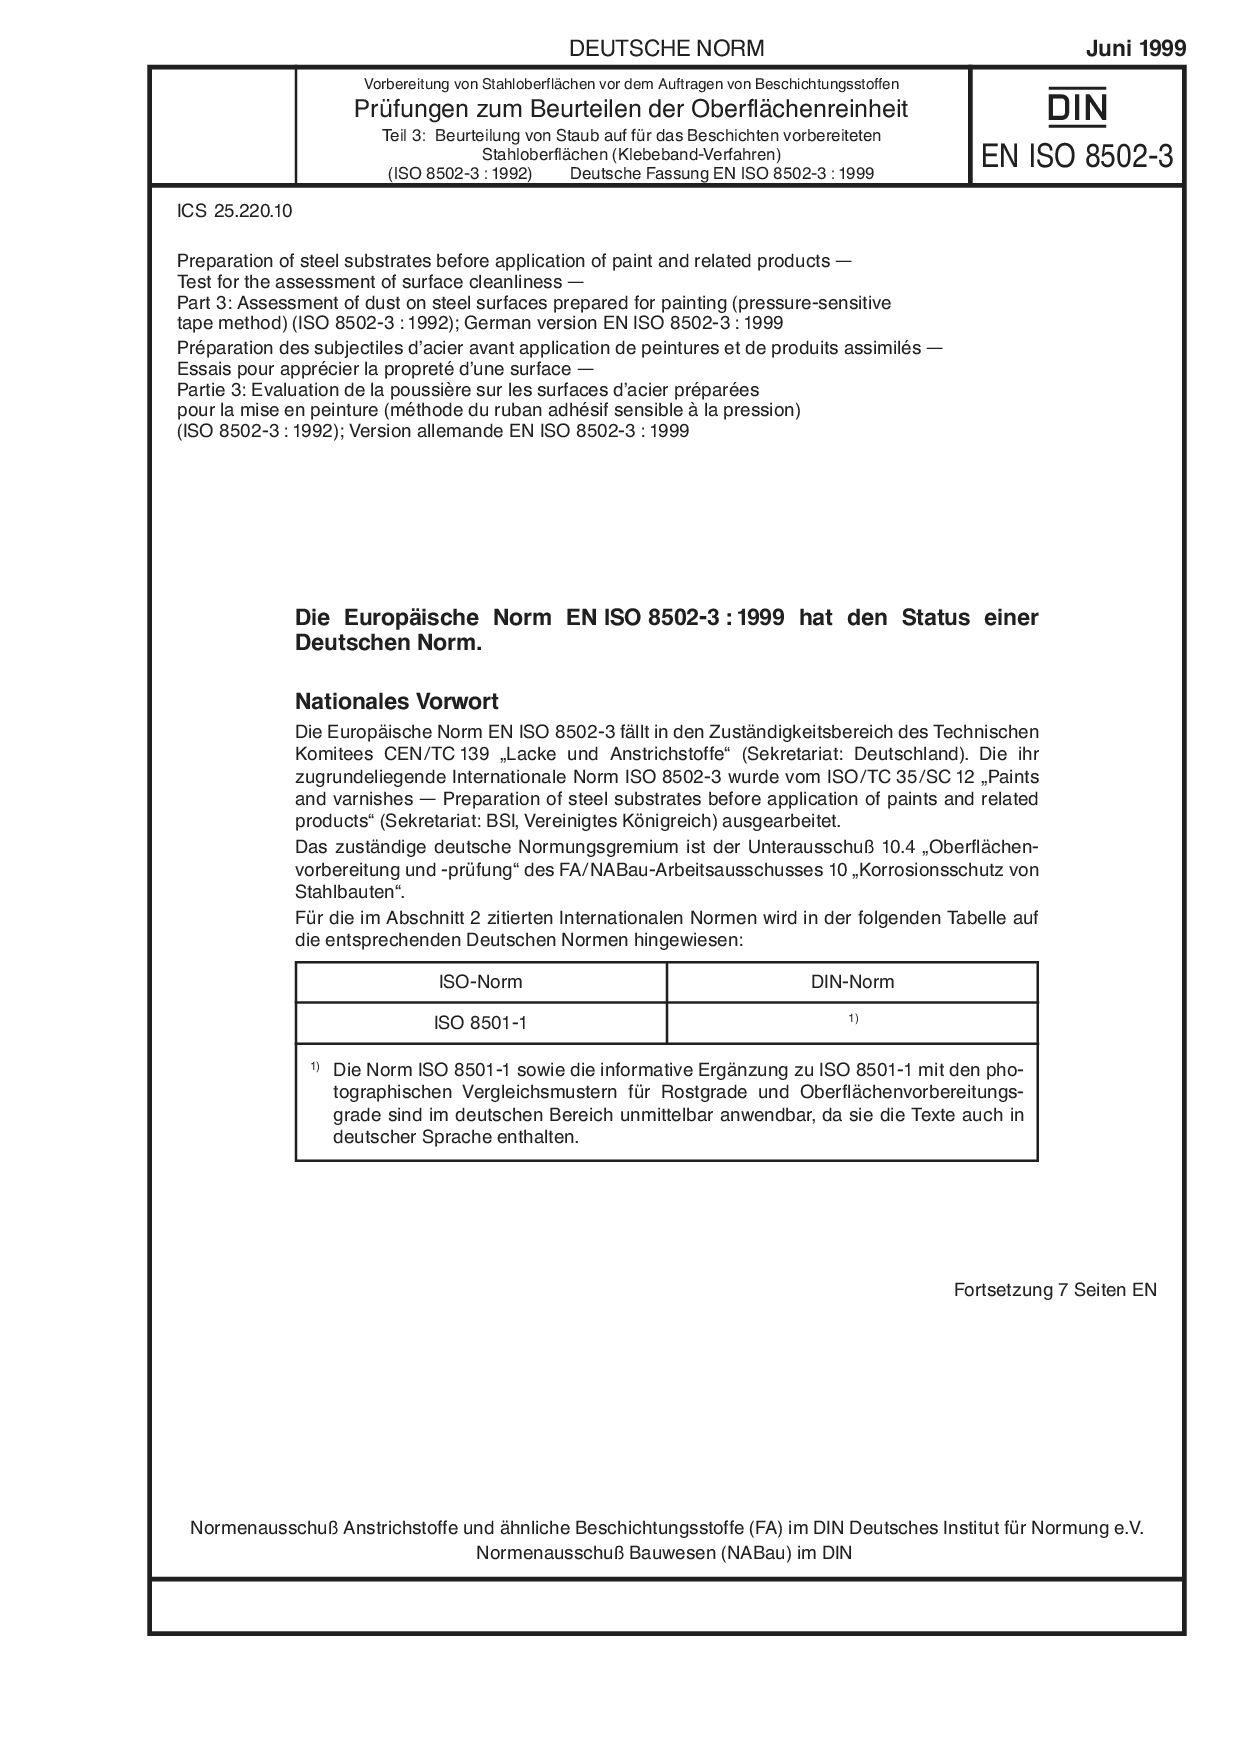 DIN EN ISO 8502-3:1999